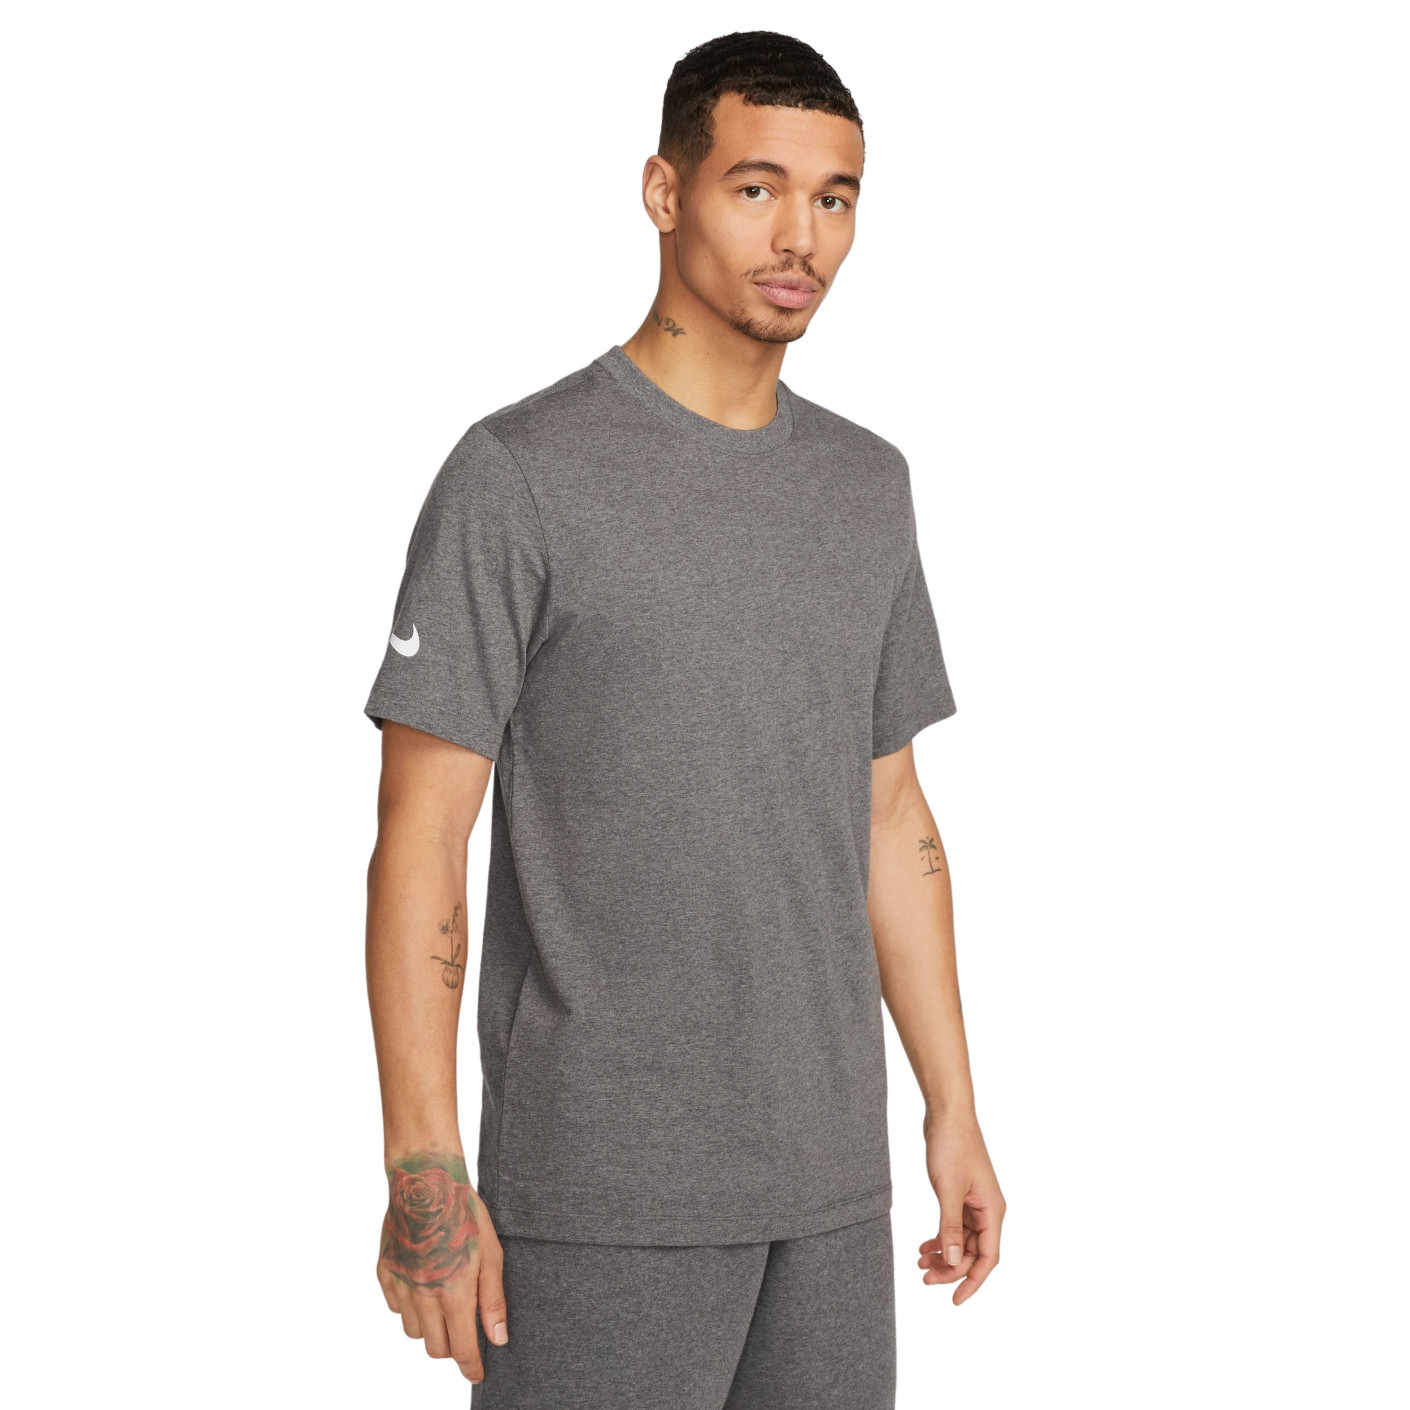 Nike Park 20 T-Shirt Grey